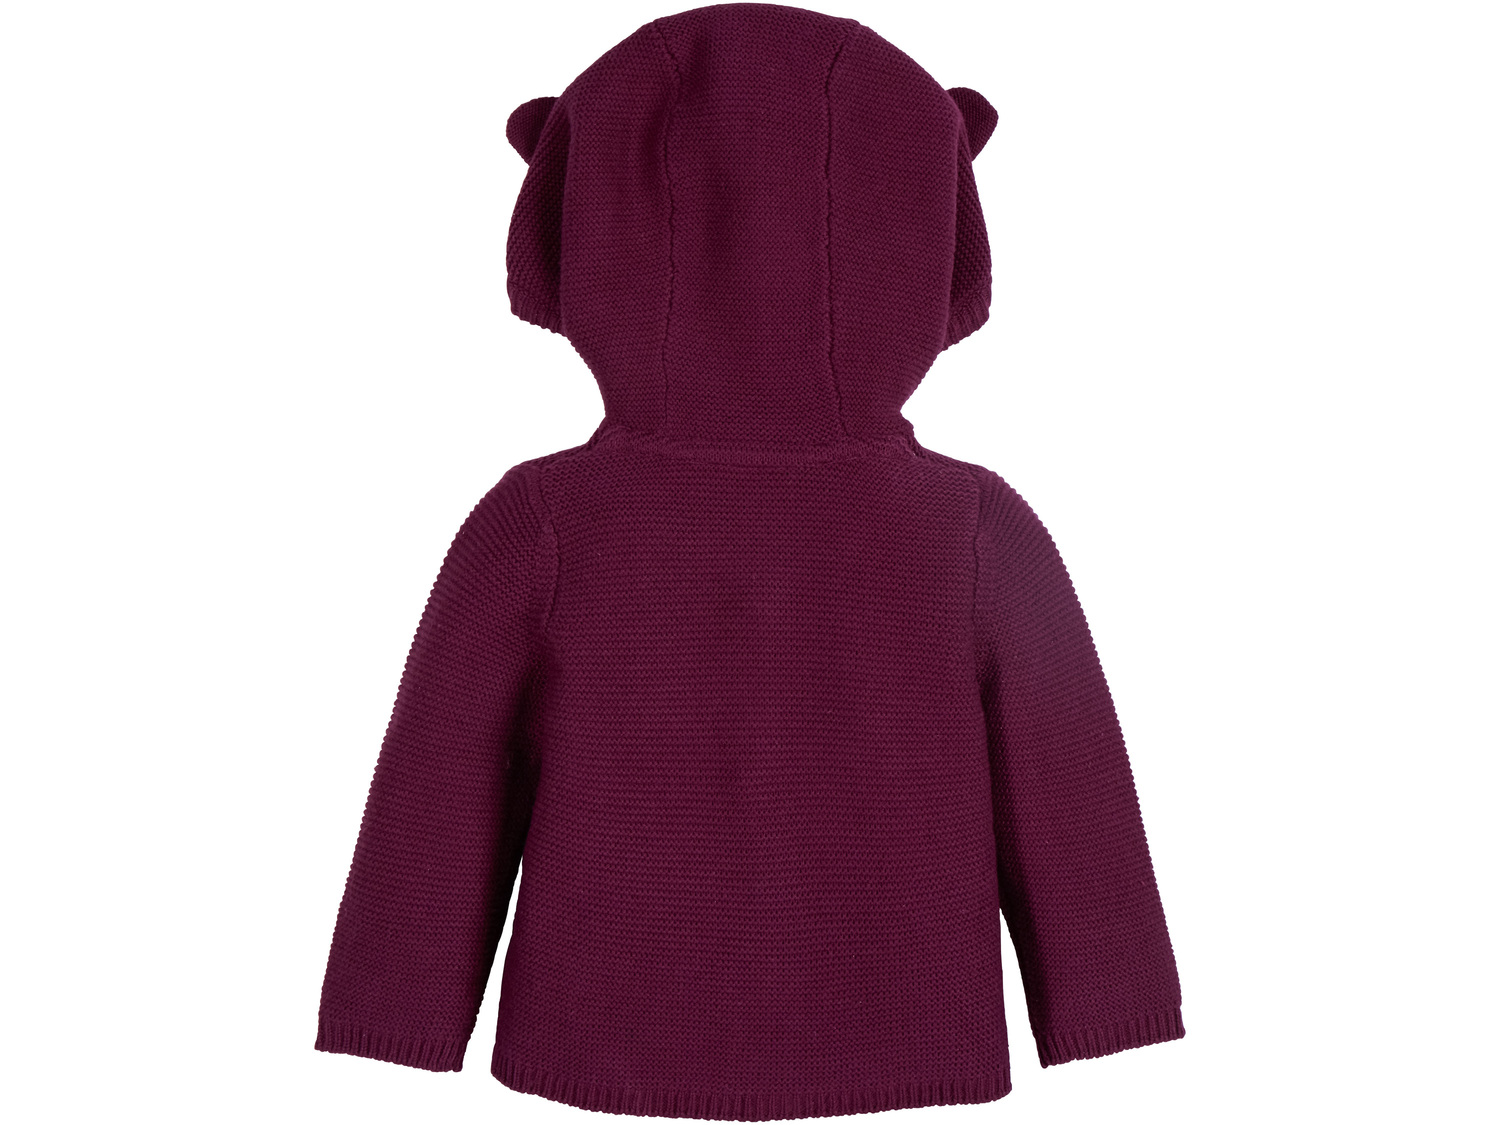 Sweterek niemowlęcy Lupilu, cena 19,99 PLN 
- rozmiary: 62-92
- 100% biobawełny
Dostępne ...